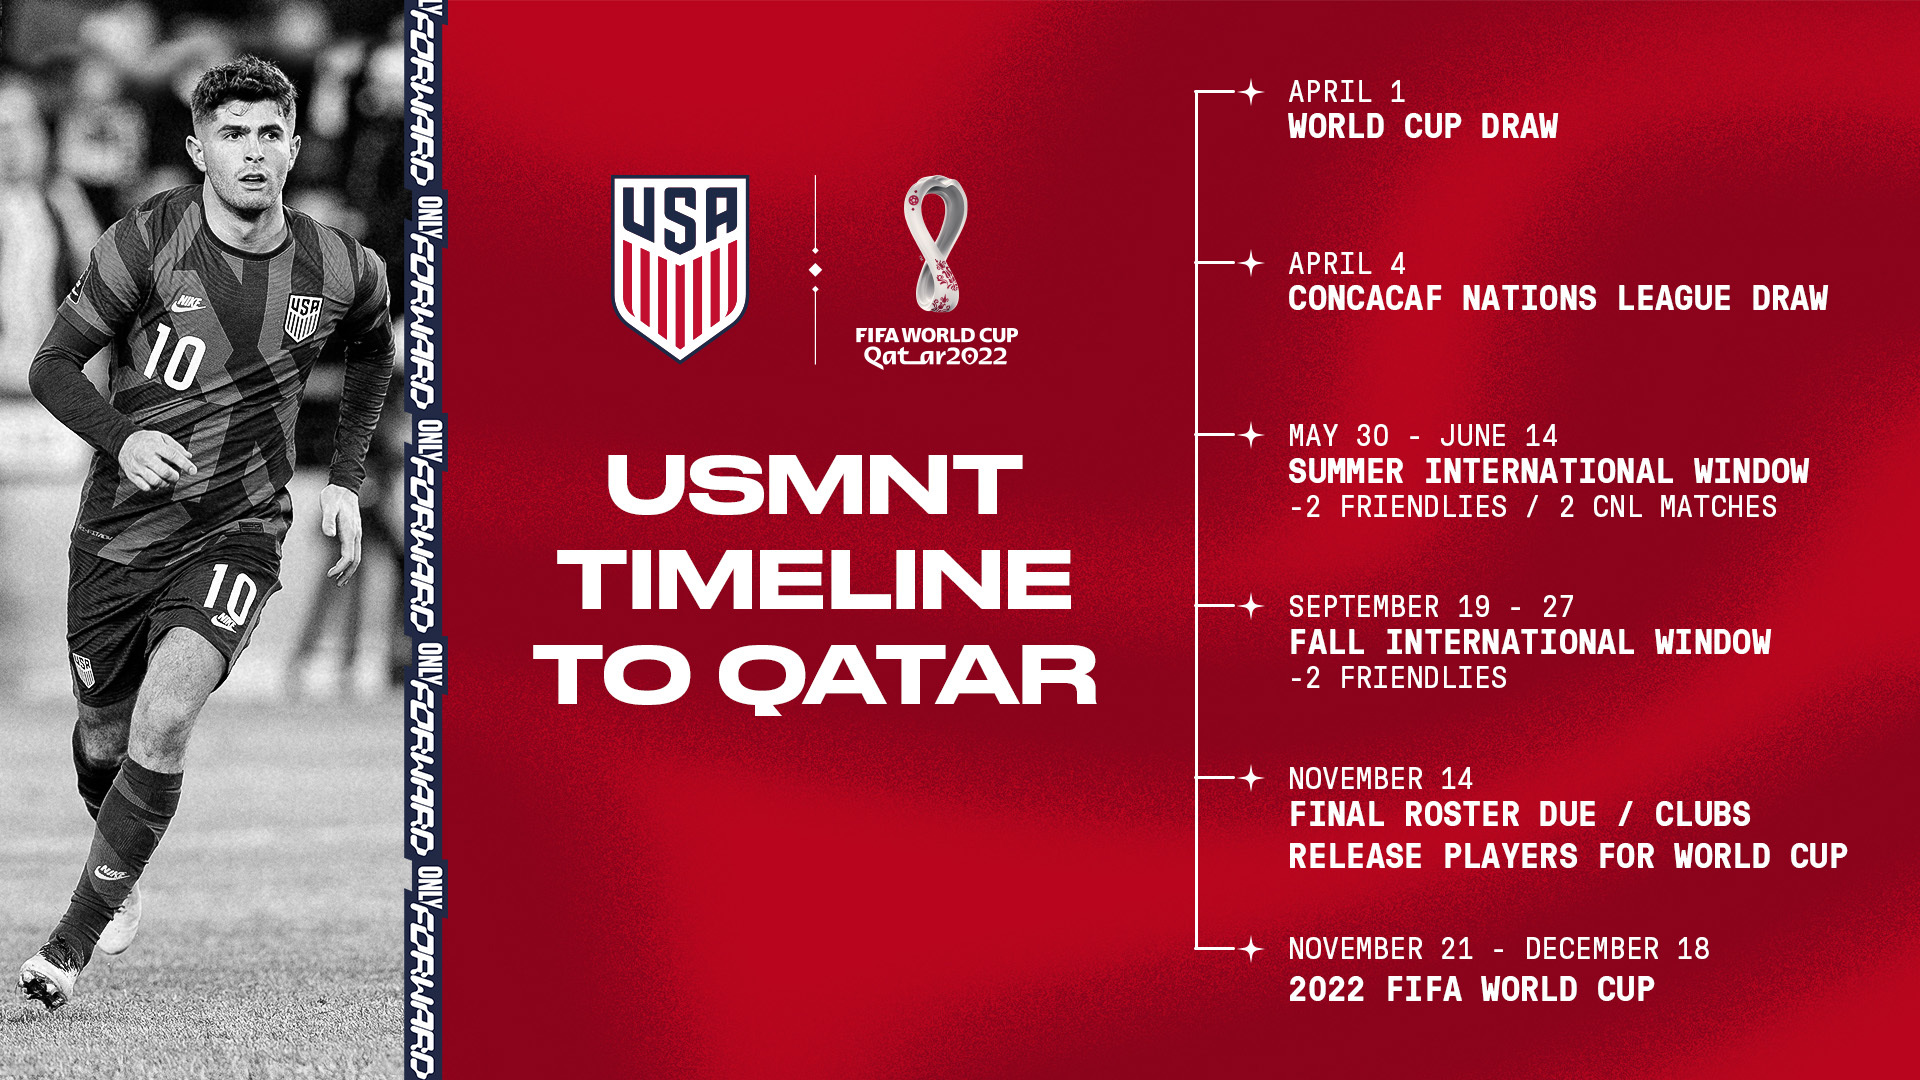 Timeline to Qatar